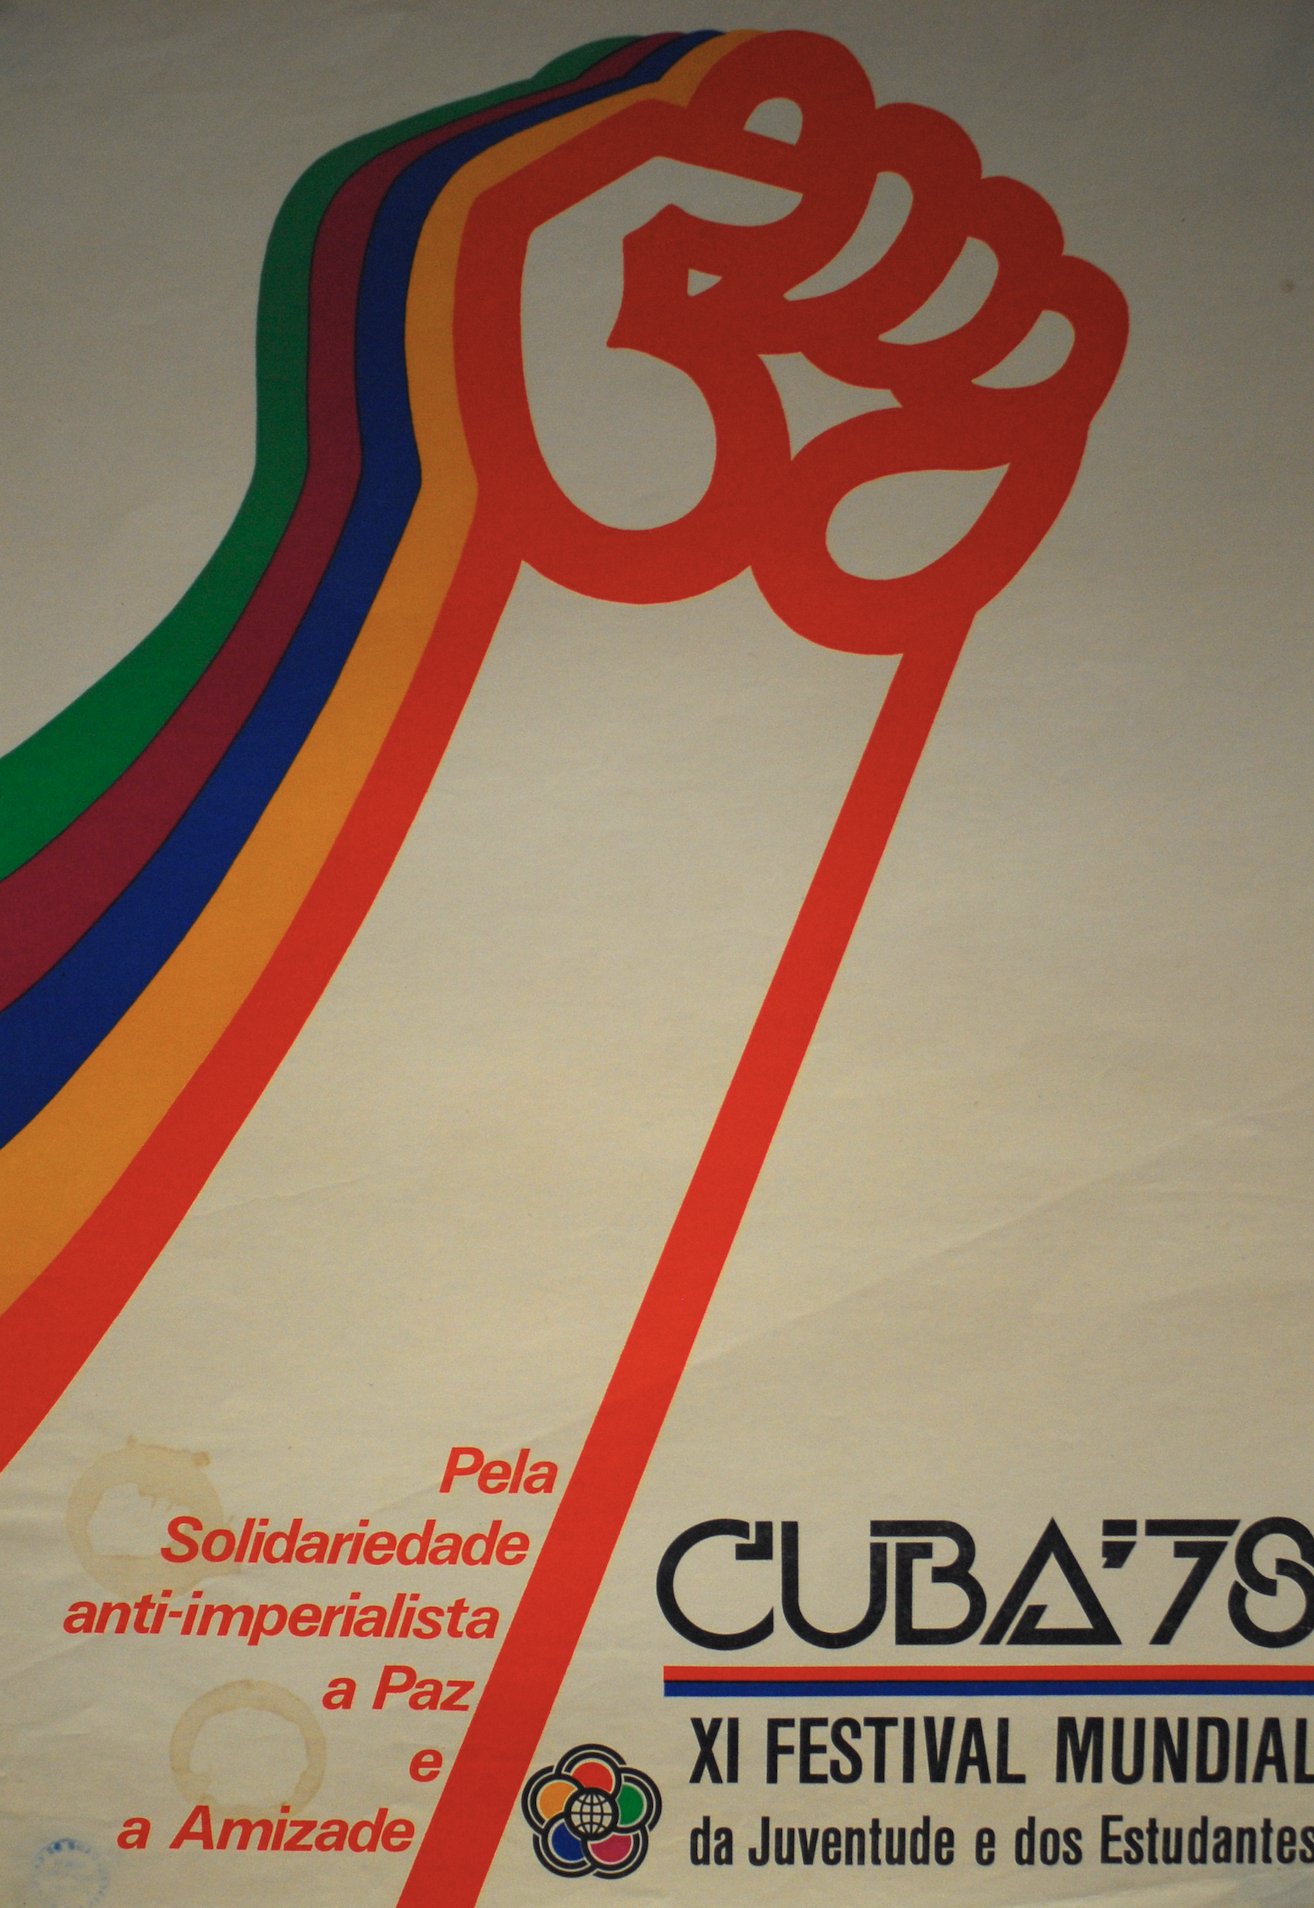 Cuba '78 XI Festival Mundial